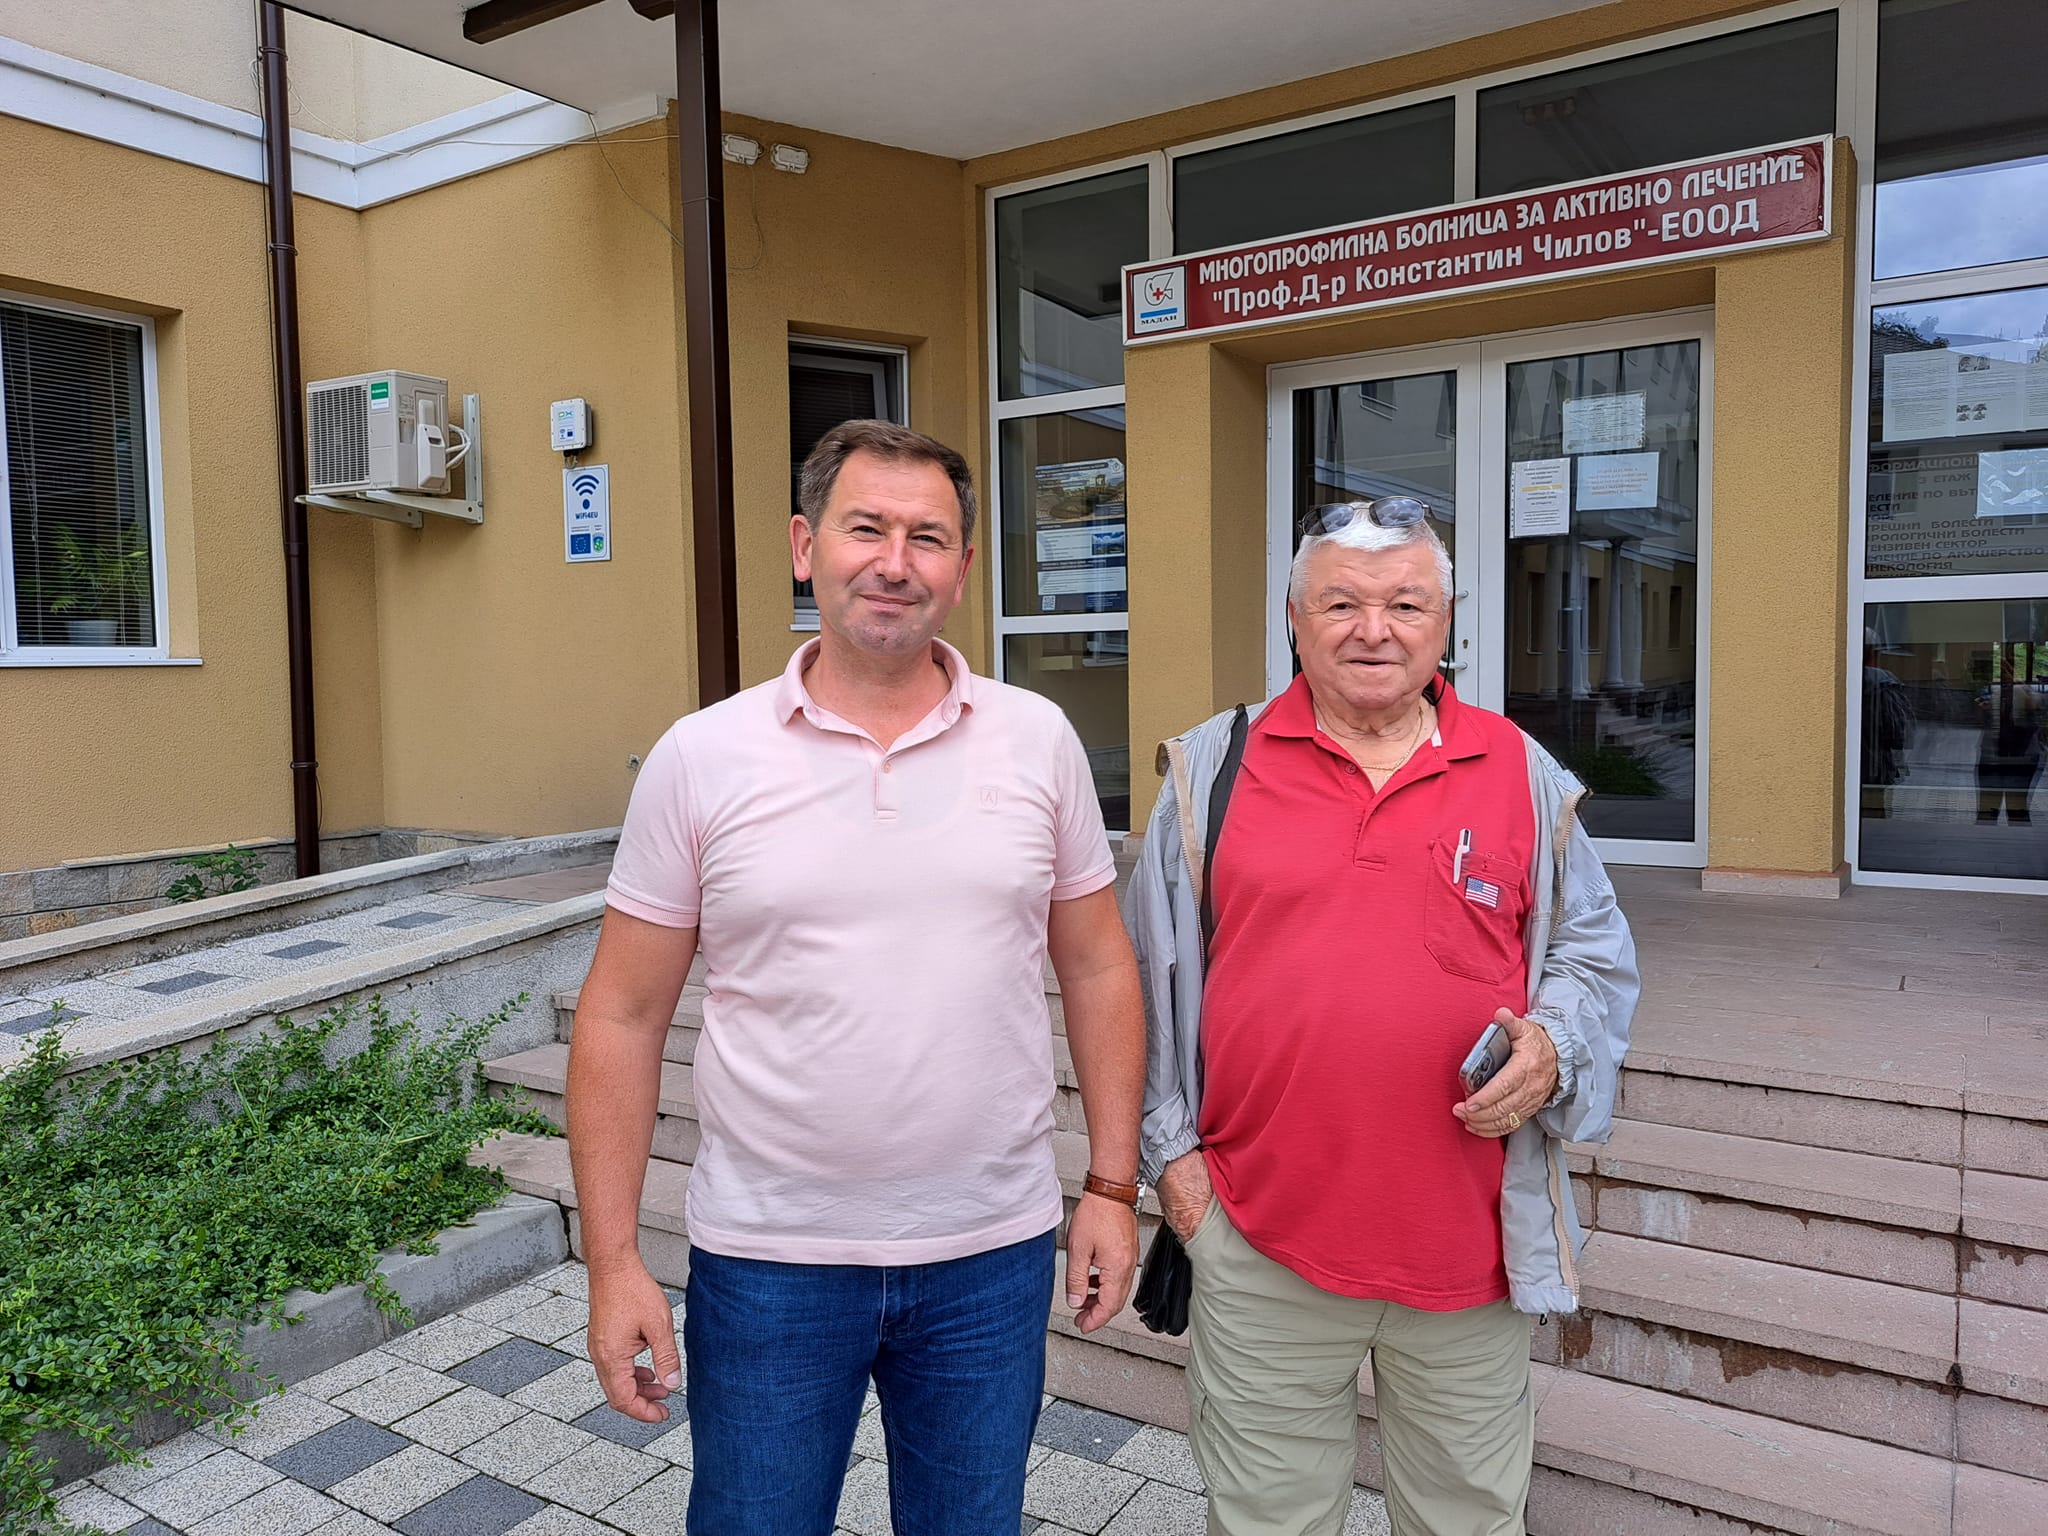 Преди дни Чападжиев посети родния си град Мадан, където през 2019 г. направи дарение от 1 млн. долара за закупуването на модерно оборудване и апаратура за болницата в града.